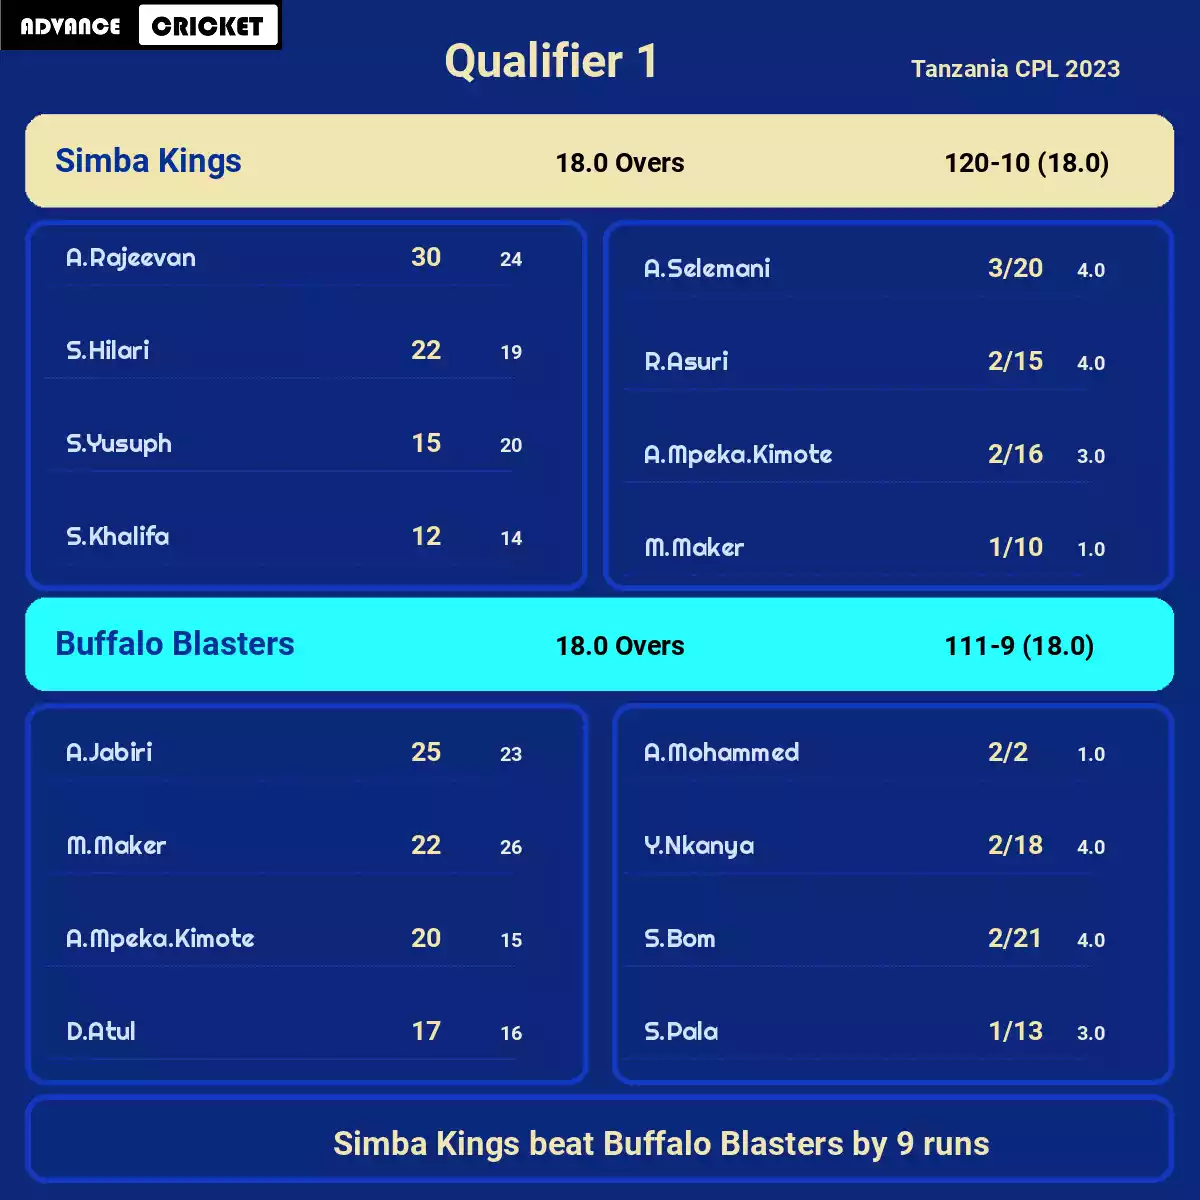 BUB vs SK Qualifier 1 Tanzania CPL 2023